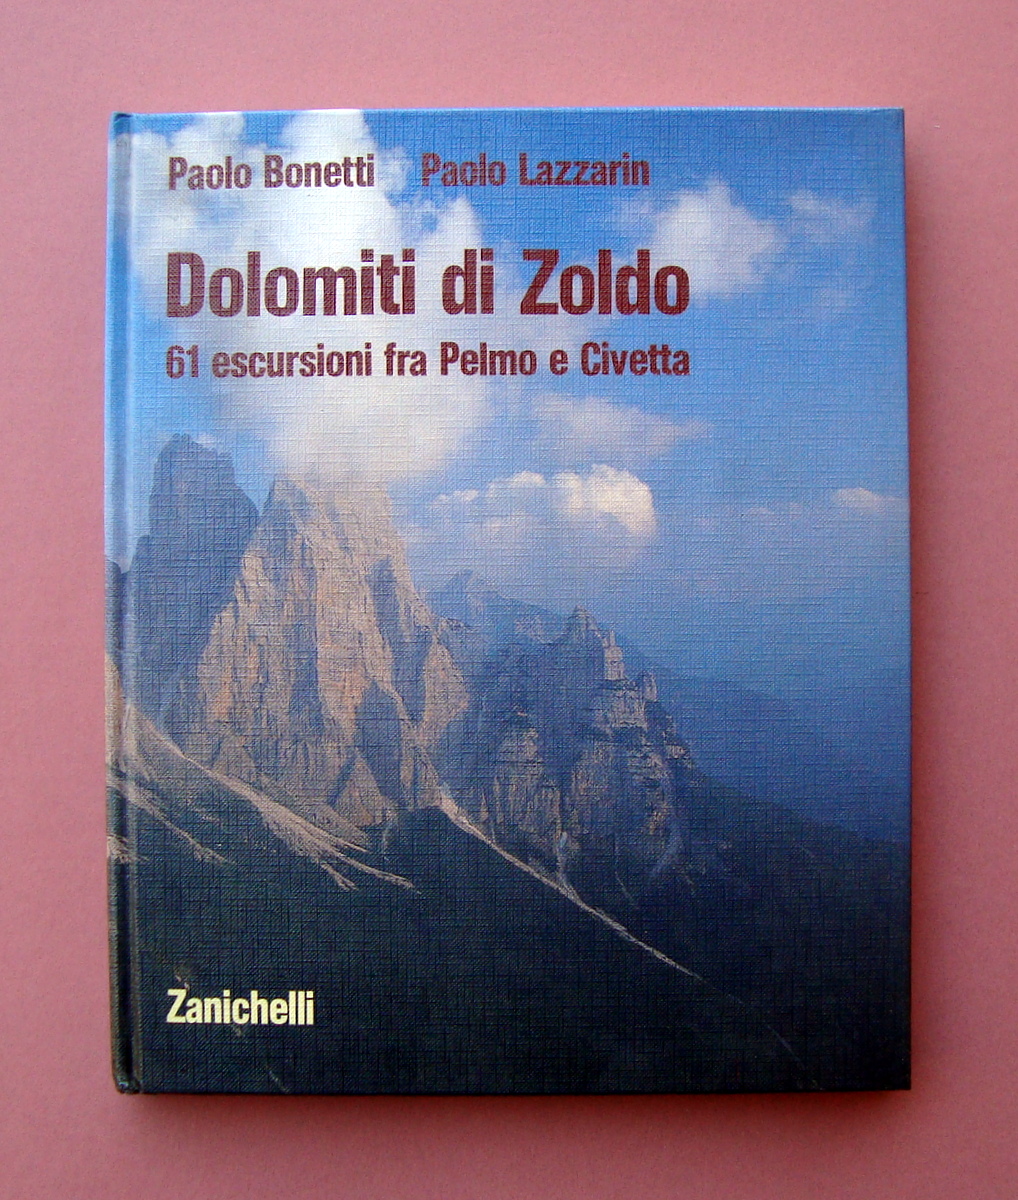 Bonetti Lazzarin Dolomiti di Zoldo Pelmo CIvetta 1990 Zanichelli editore